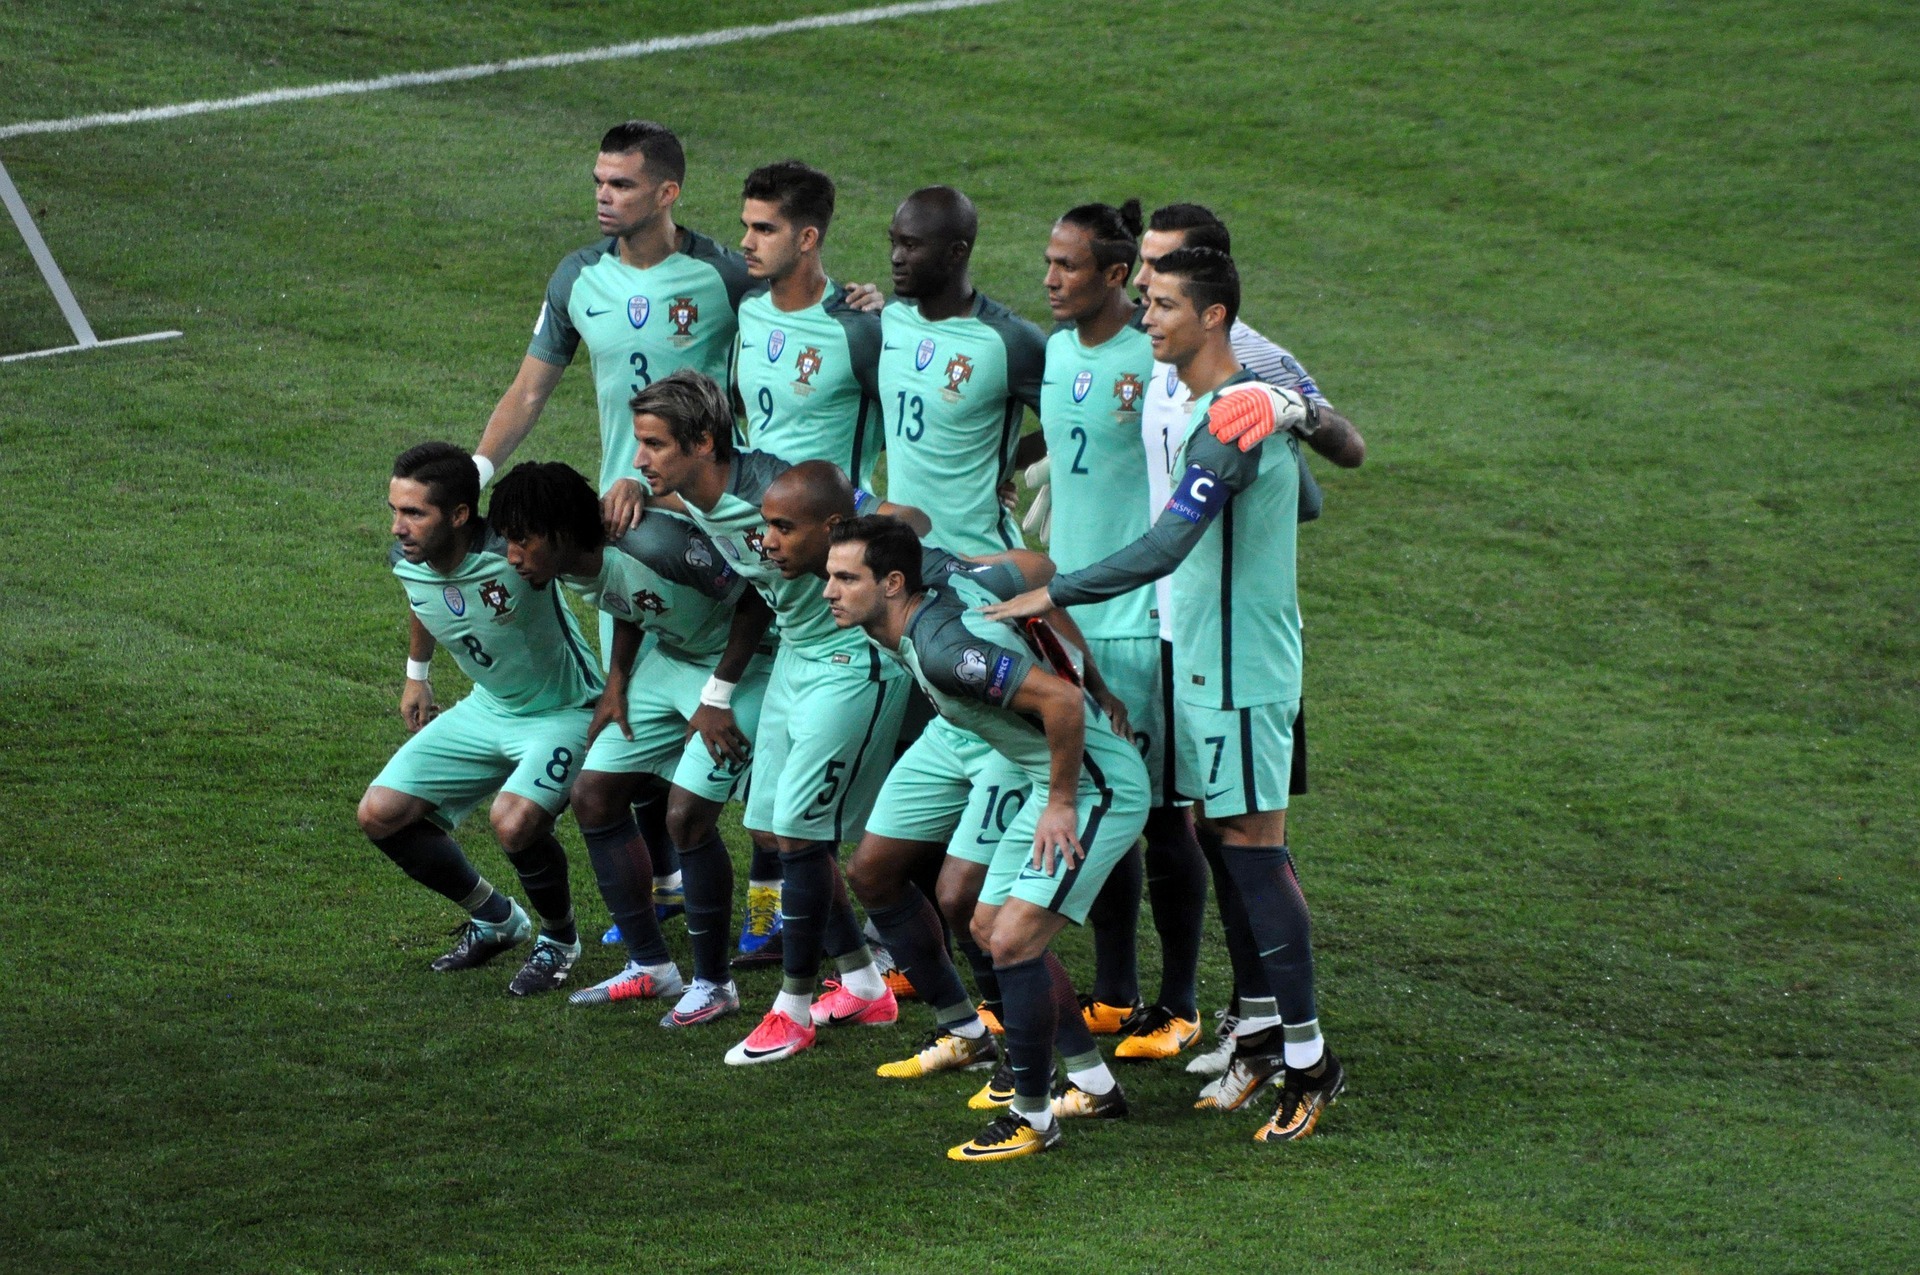 Este ano, a Seleção de Portugal vai em busca de conquistar sua primeira Copa do Mundo. Confira quais são os melhores jogadores de Portugal.